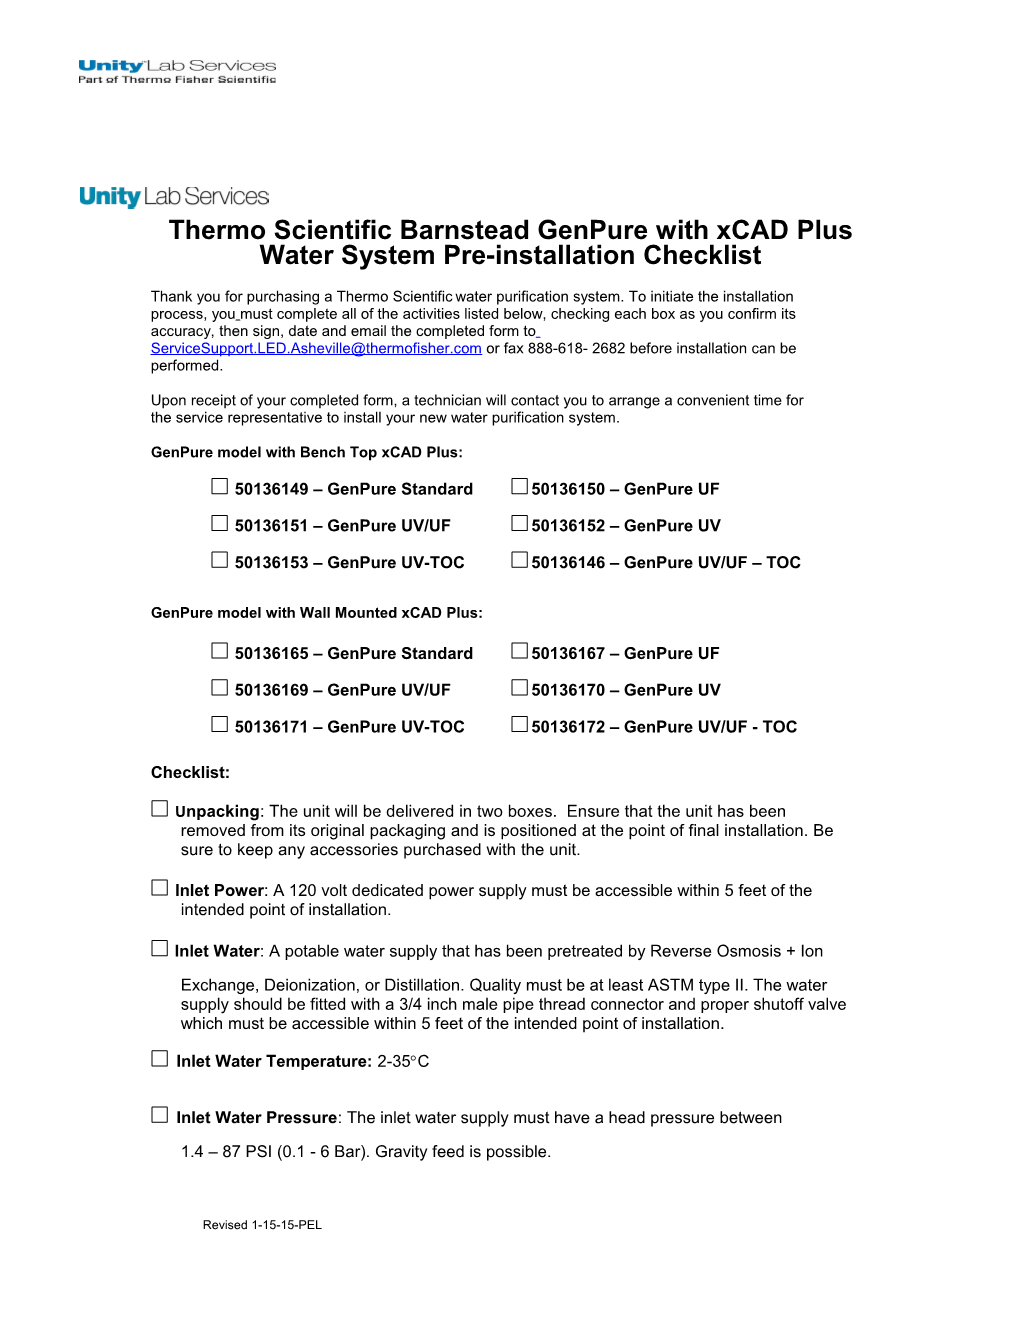 Thermo Scientific Barnstead Genpurewith Xcadpluswater System Pre-Installation Checklist